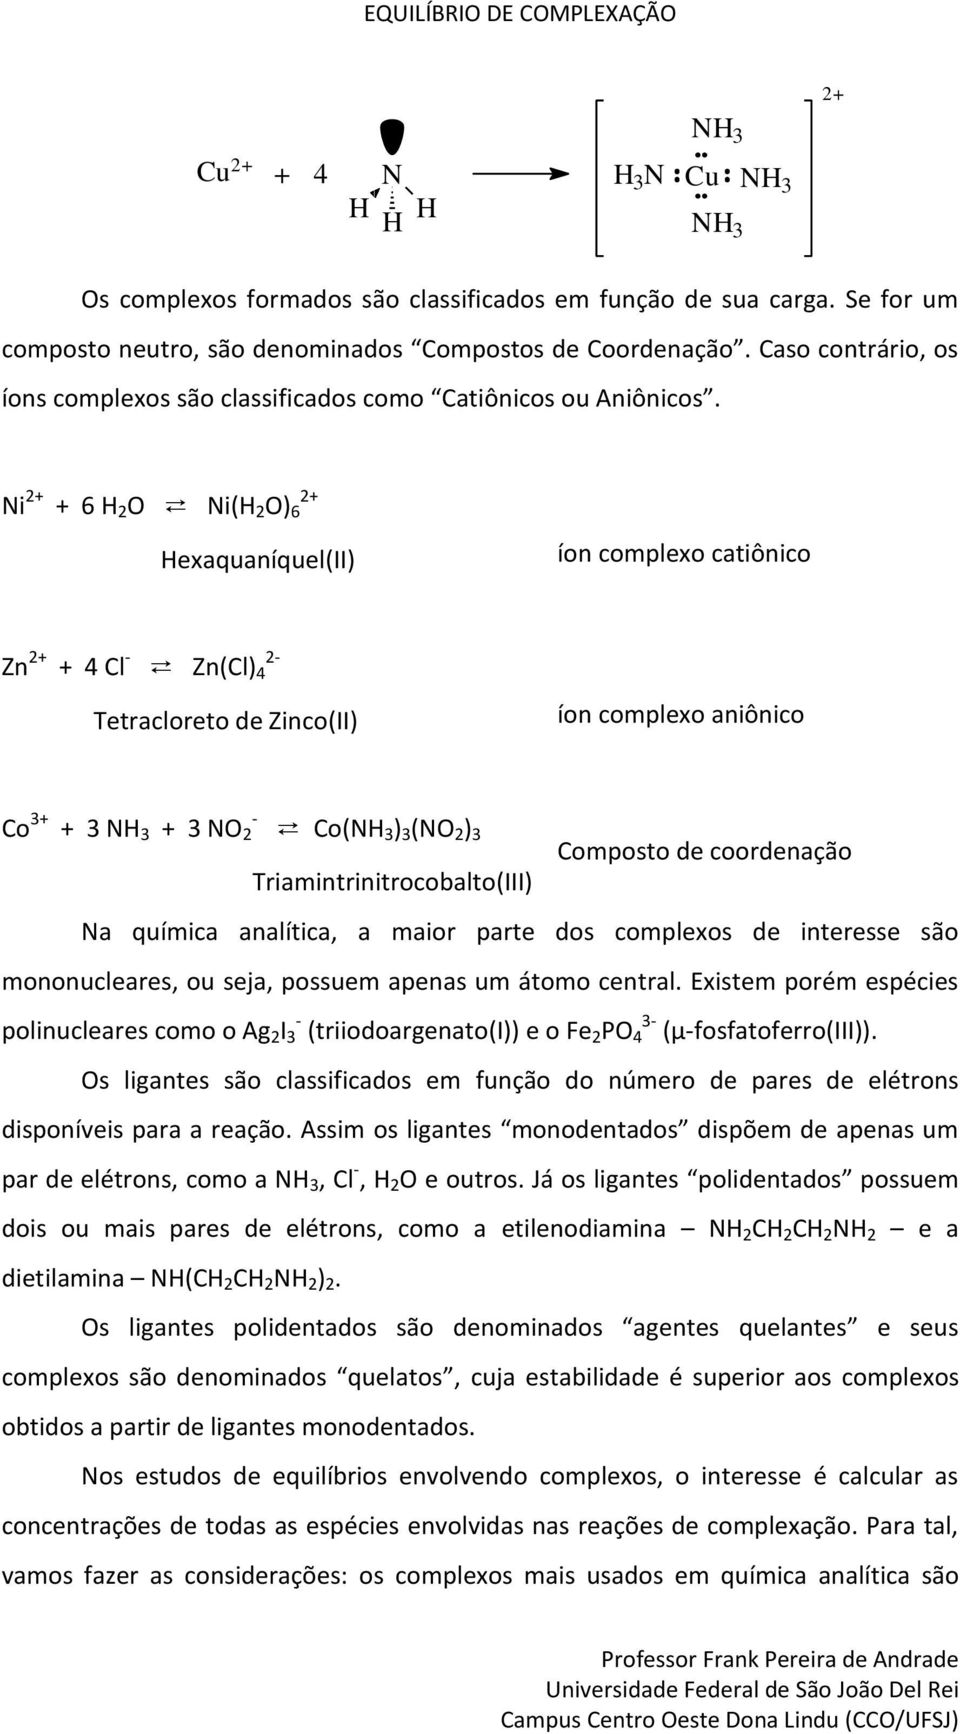 Ni + + 6 H O Ni(H O) 6 + Hexaquaíquel(II) ío complexo catiôico Z + + Cl - Z(Cl) - Tetracloreto de Zico(II) ío complexo aiôico Co + - + NH + NO Co(NH ) (NO ) Composto de coordeação